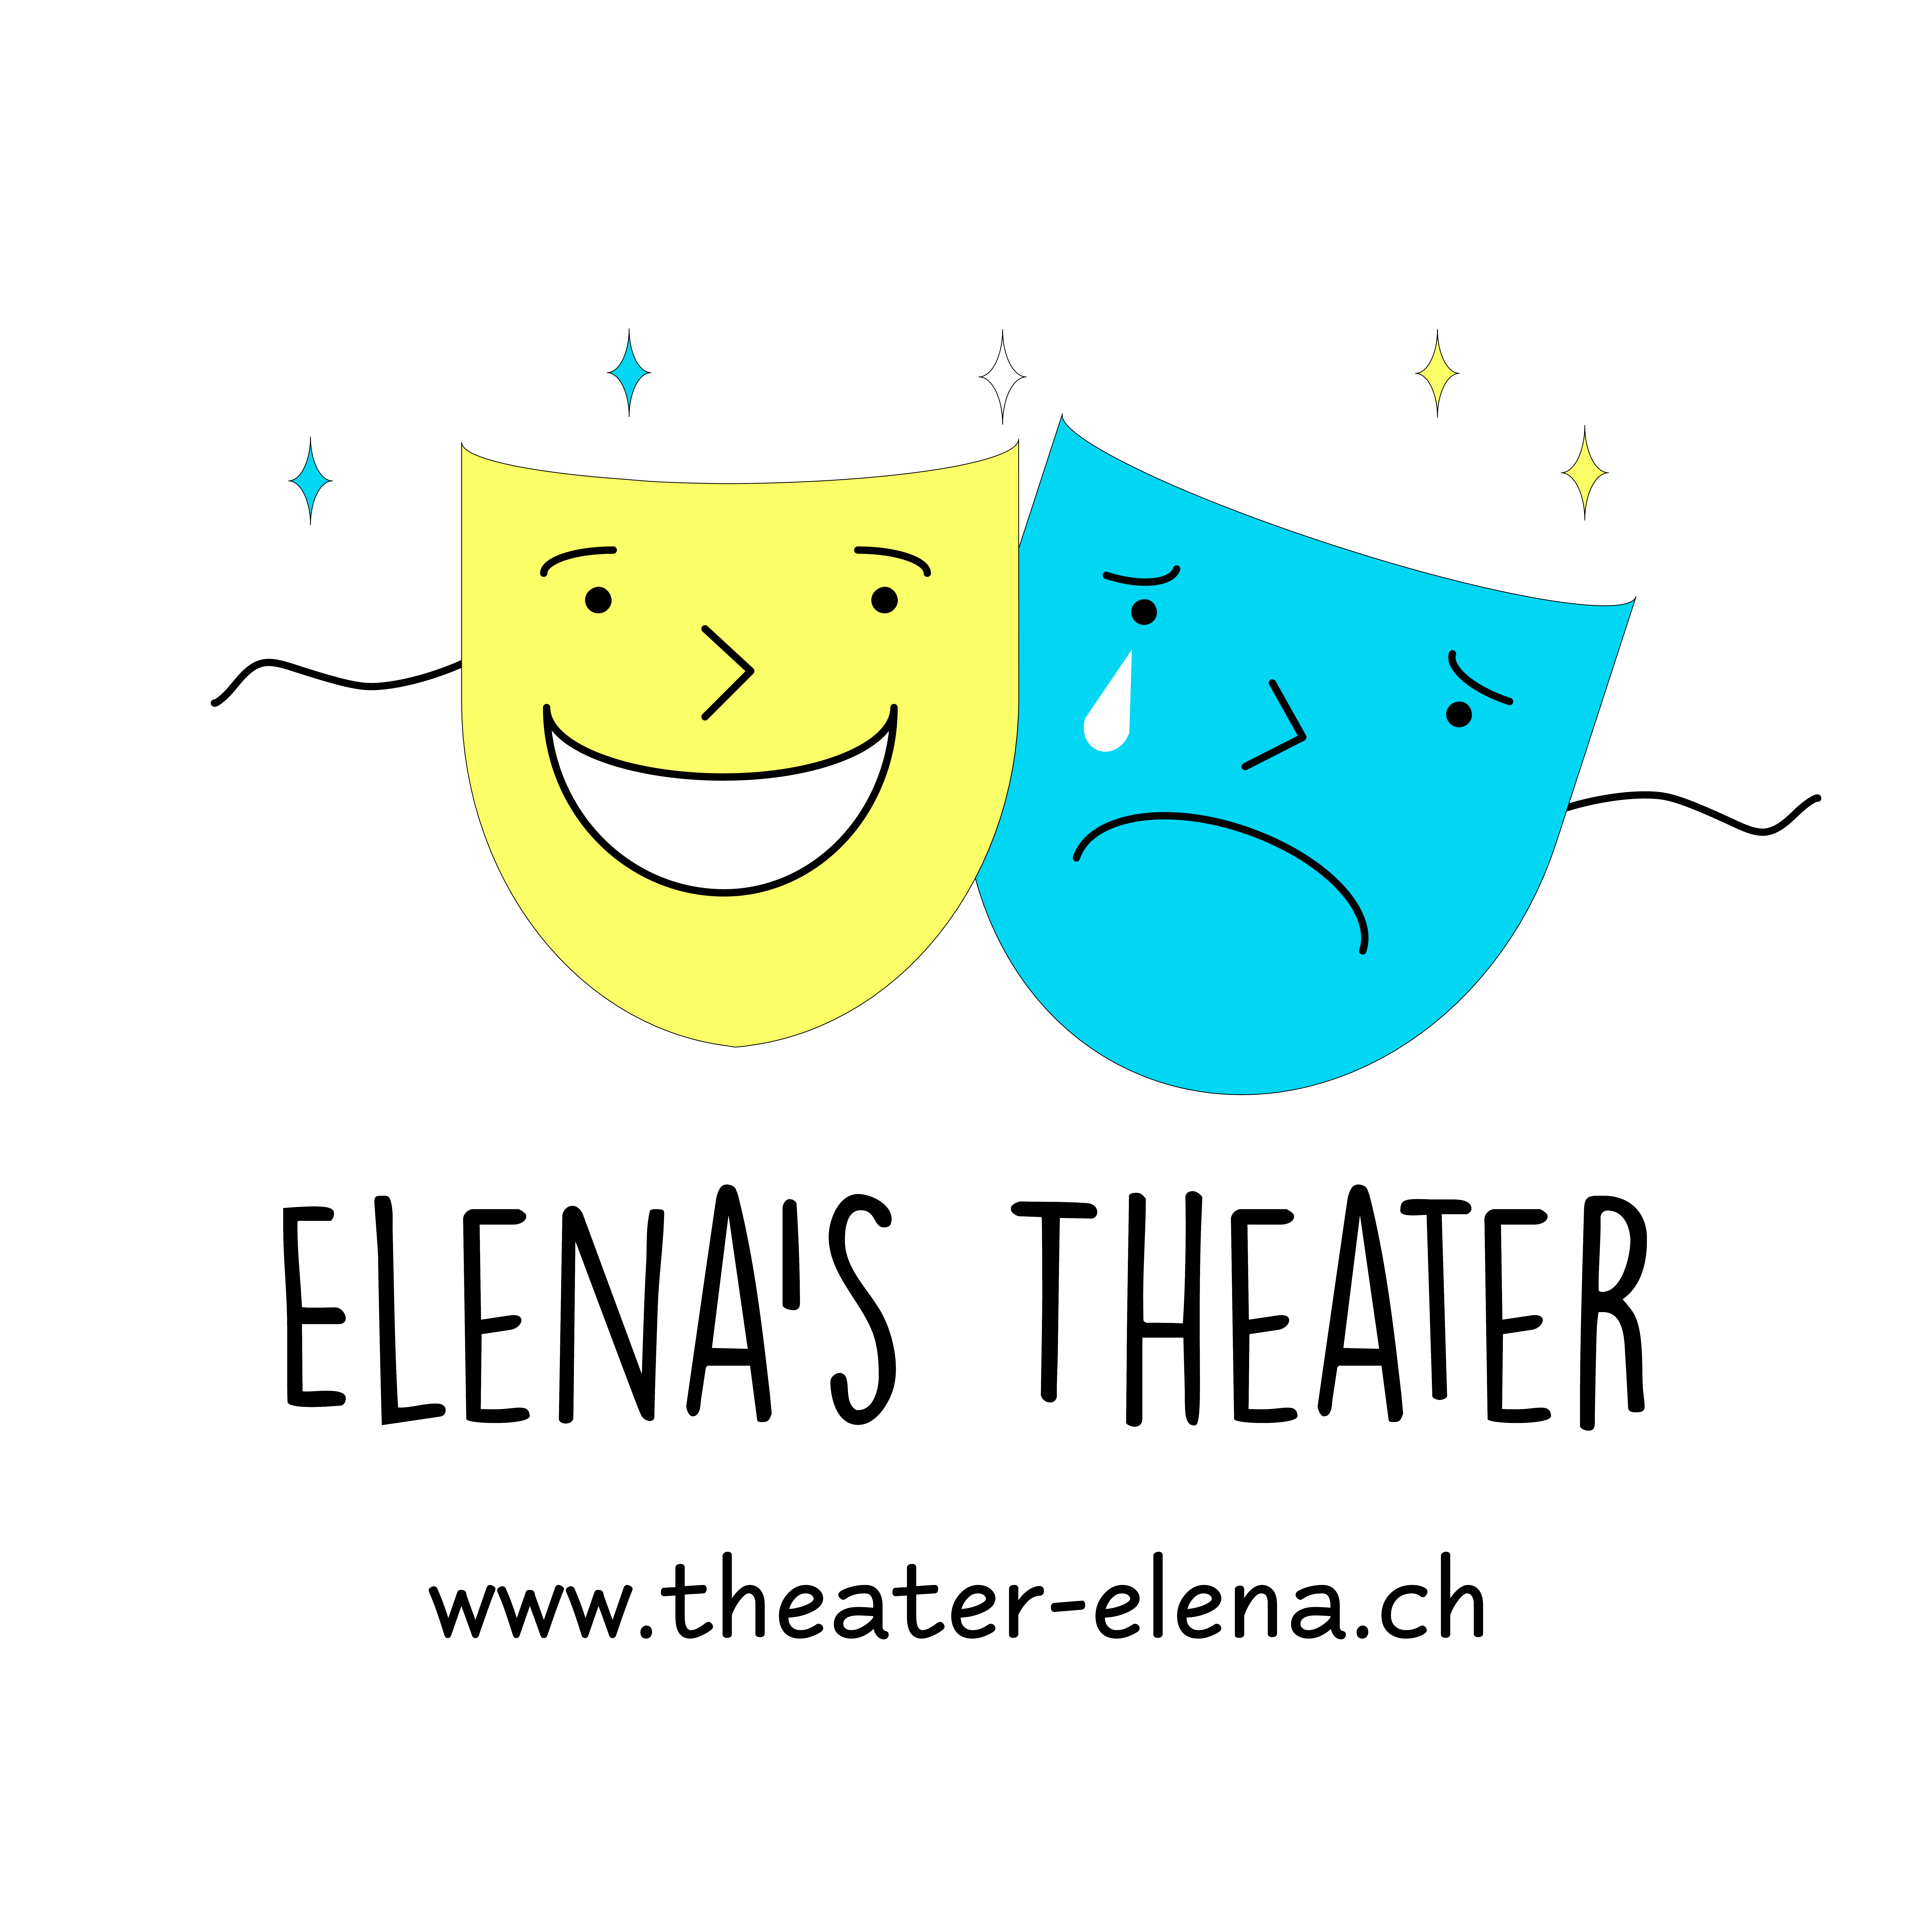 (c) Theater-elena.ch